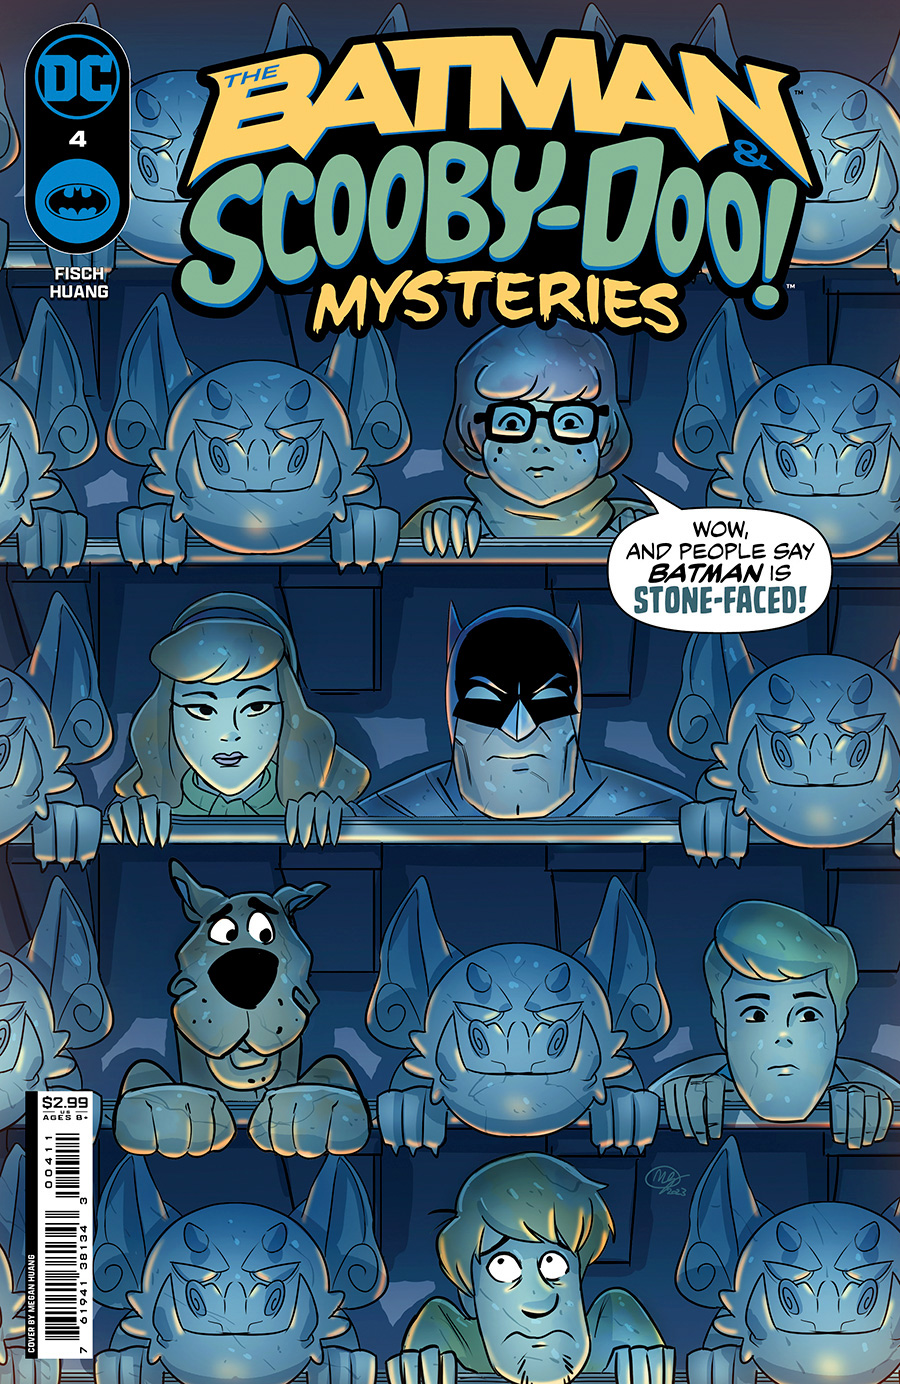 Batman & Scooby-Doo Mysteries Vol 3 #4